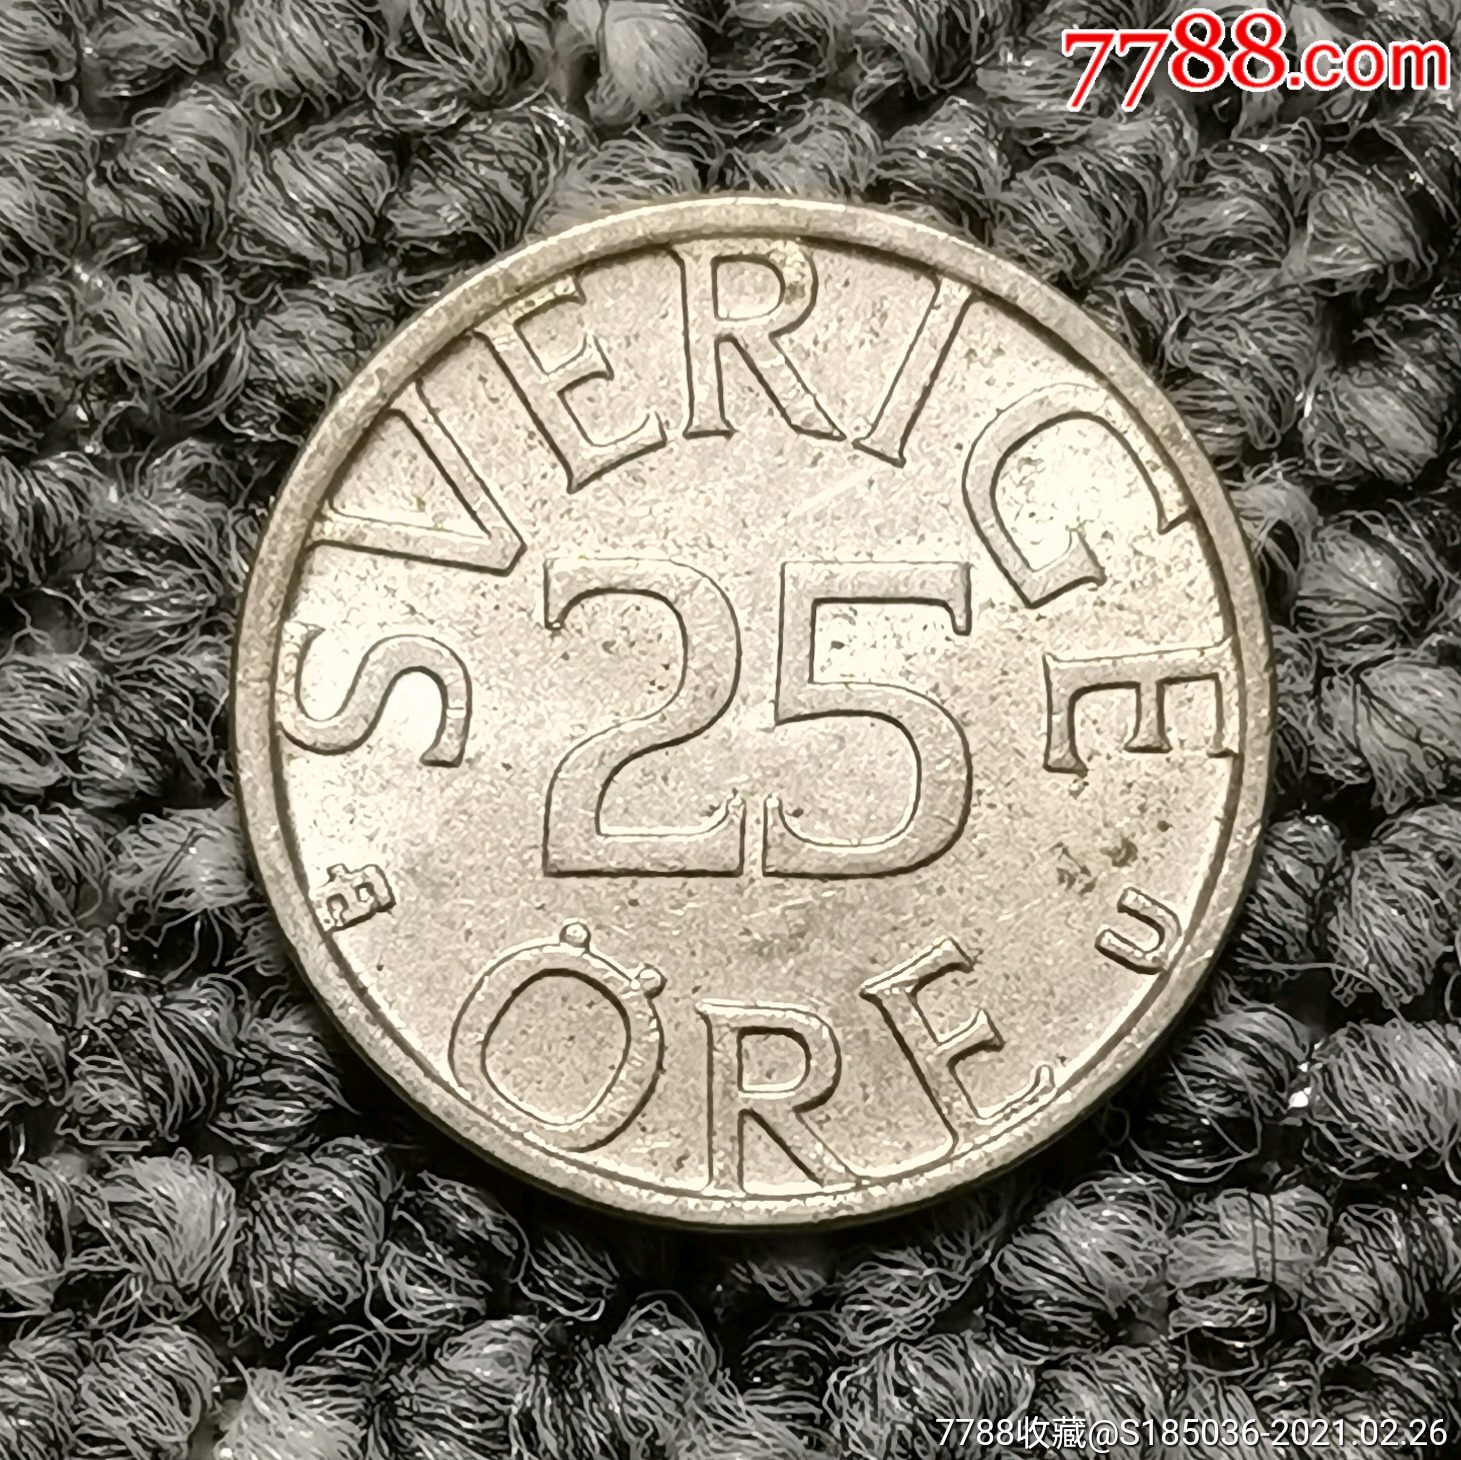 1979年瑞典25欧尔硬币_外国钱币_第2张_7788铜器收藏